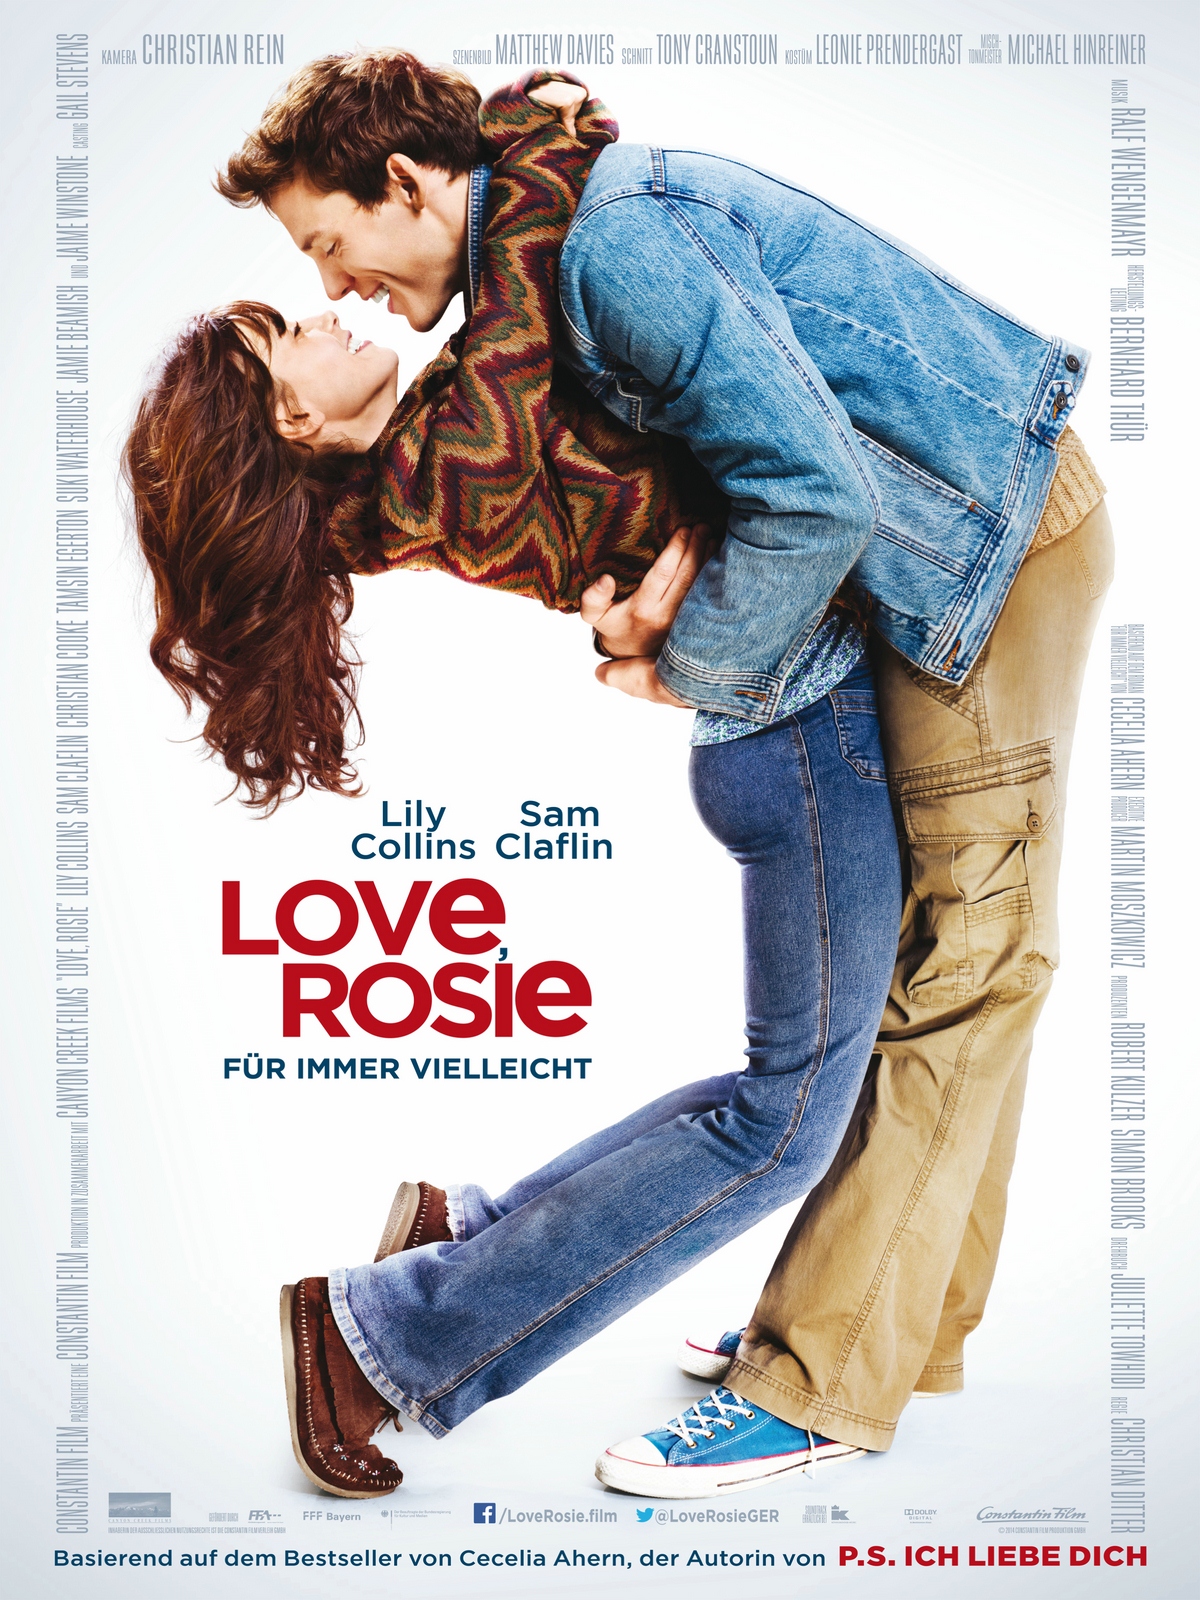 Love, Rosie – Für Immer Vielleicht